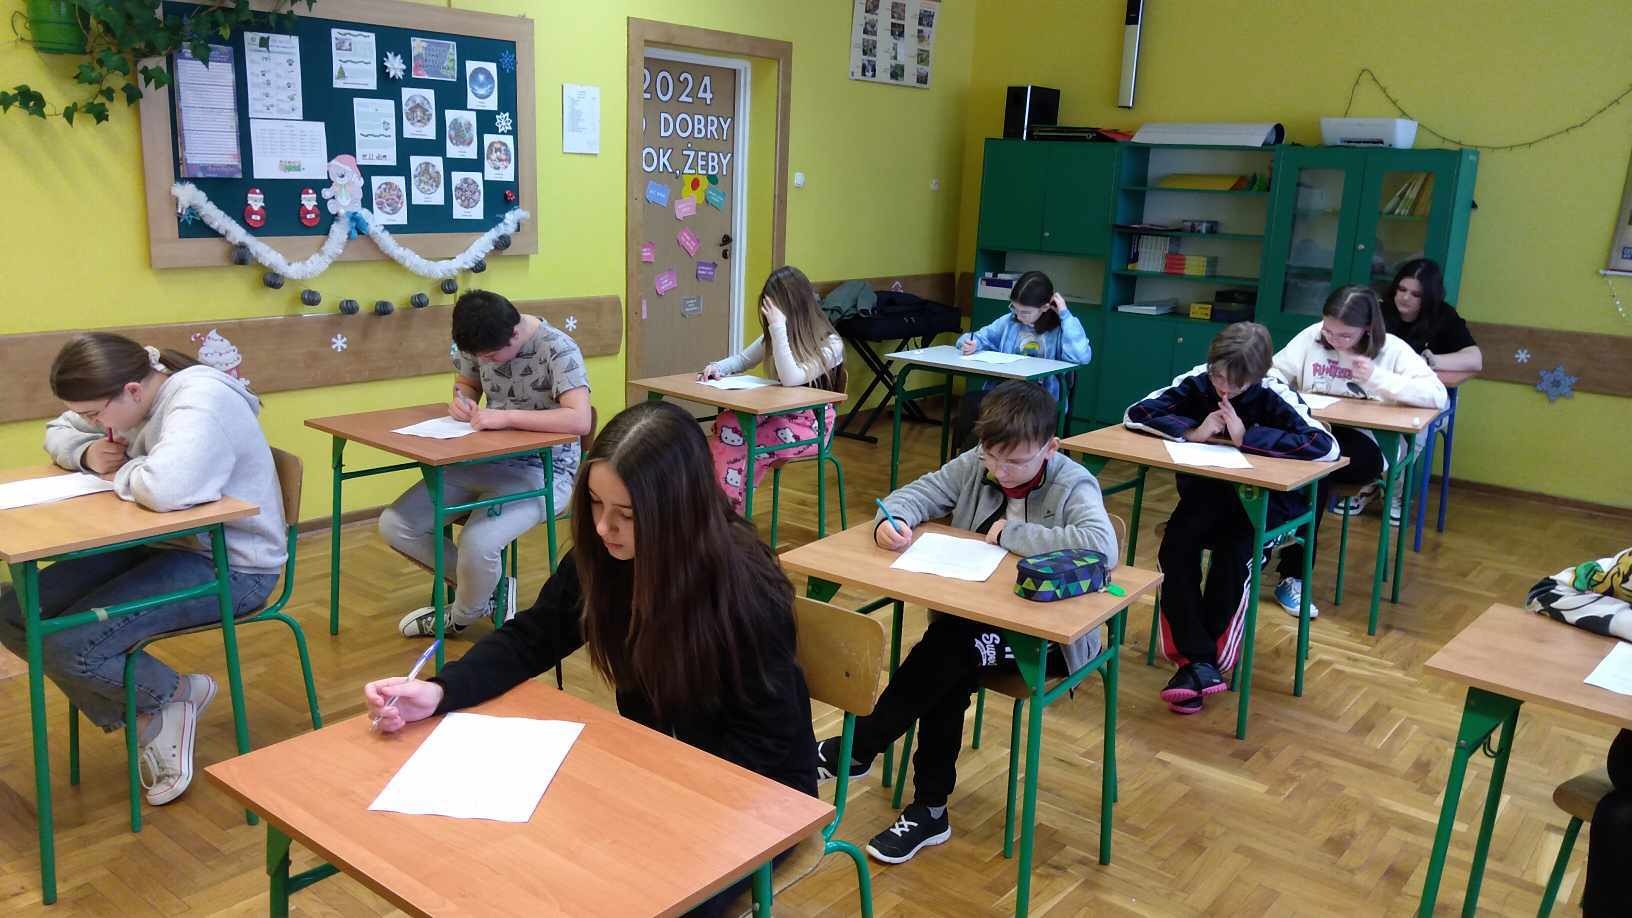 W sali lekcyjnej siedzą uczniowie przy stolikach rozwiązując test wiedzy.